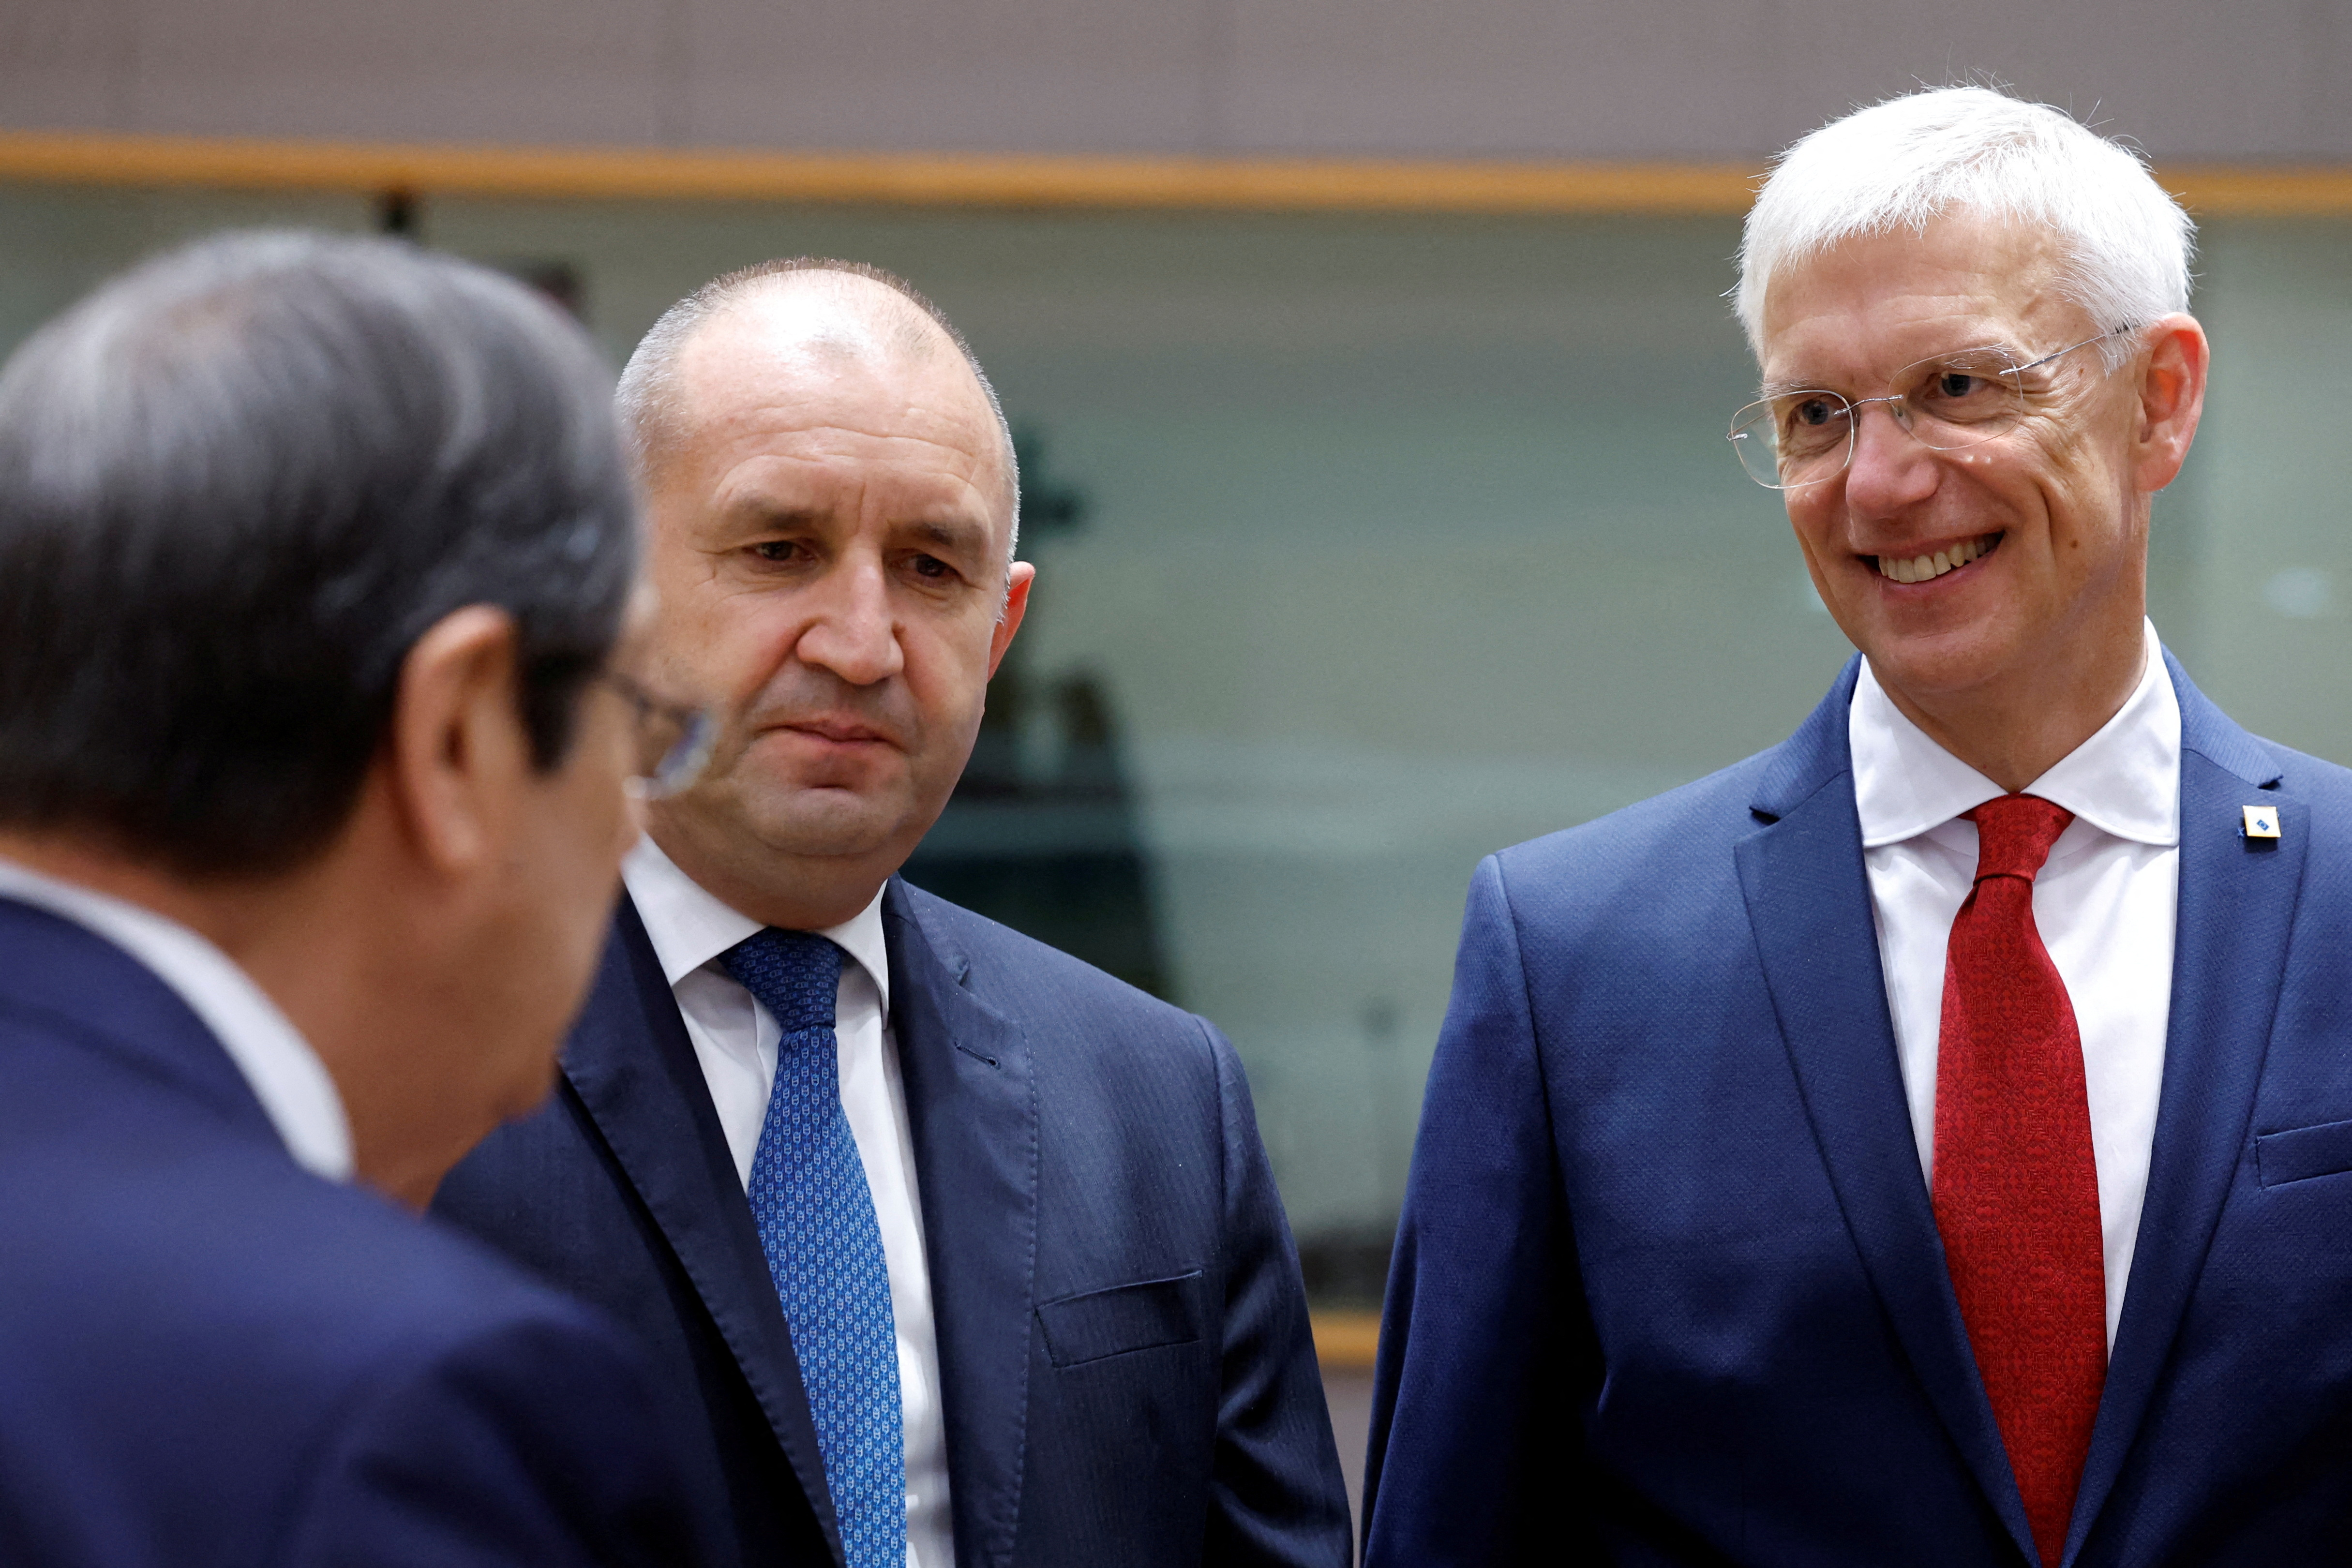 EU Leaders meet in Brussels